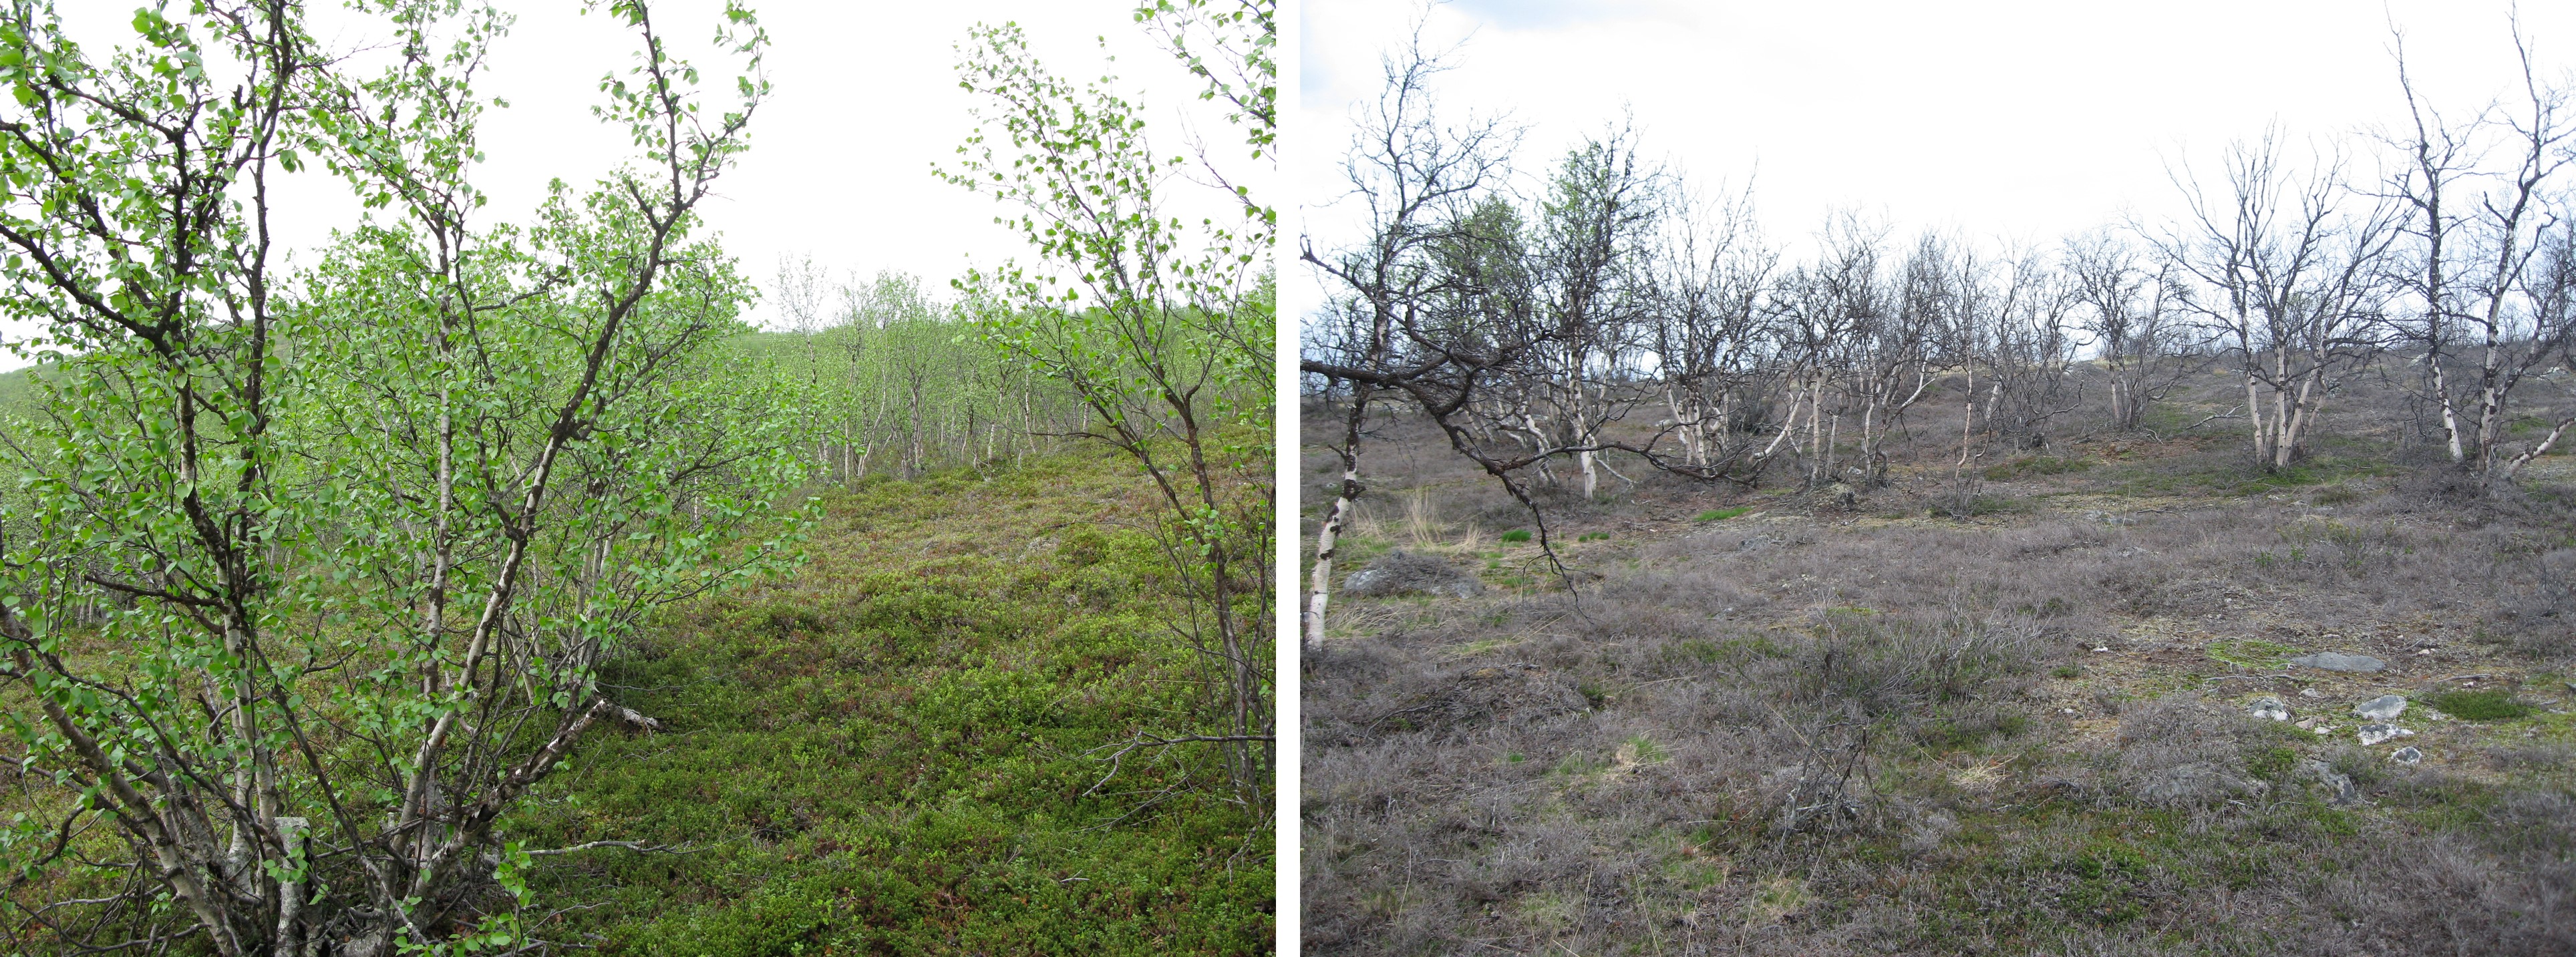 Bildene viser stasjonene fra upåvirket (venstre) til avløvet/død skog (høyre). Foto: Ole Petter Laksforsmo Vindstad